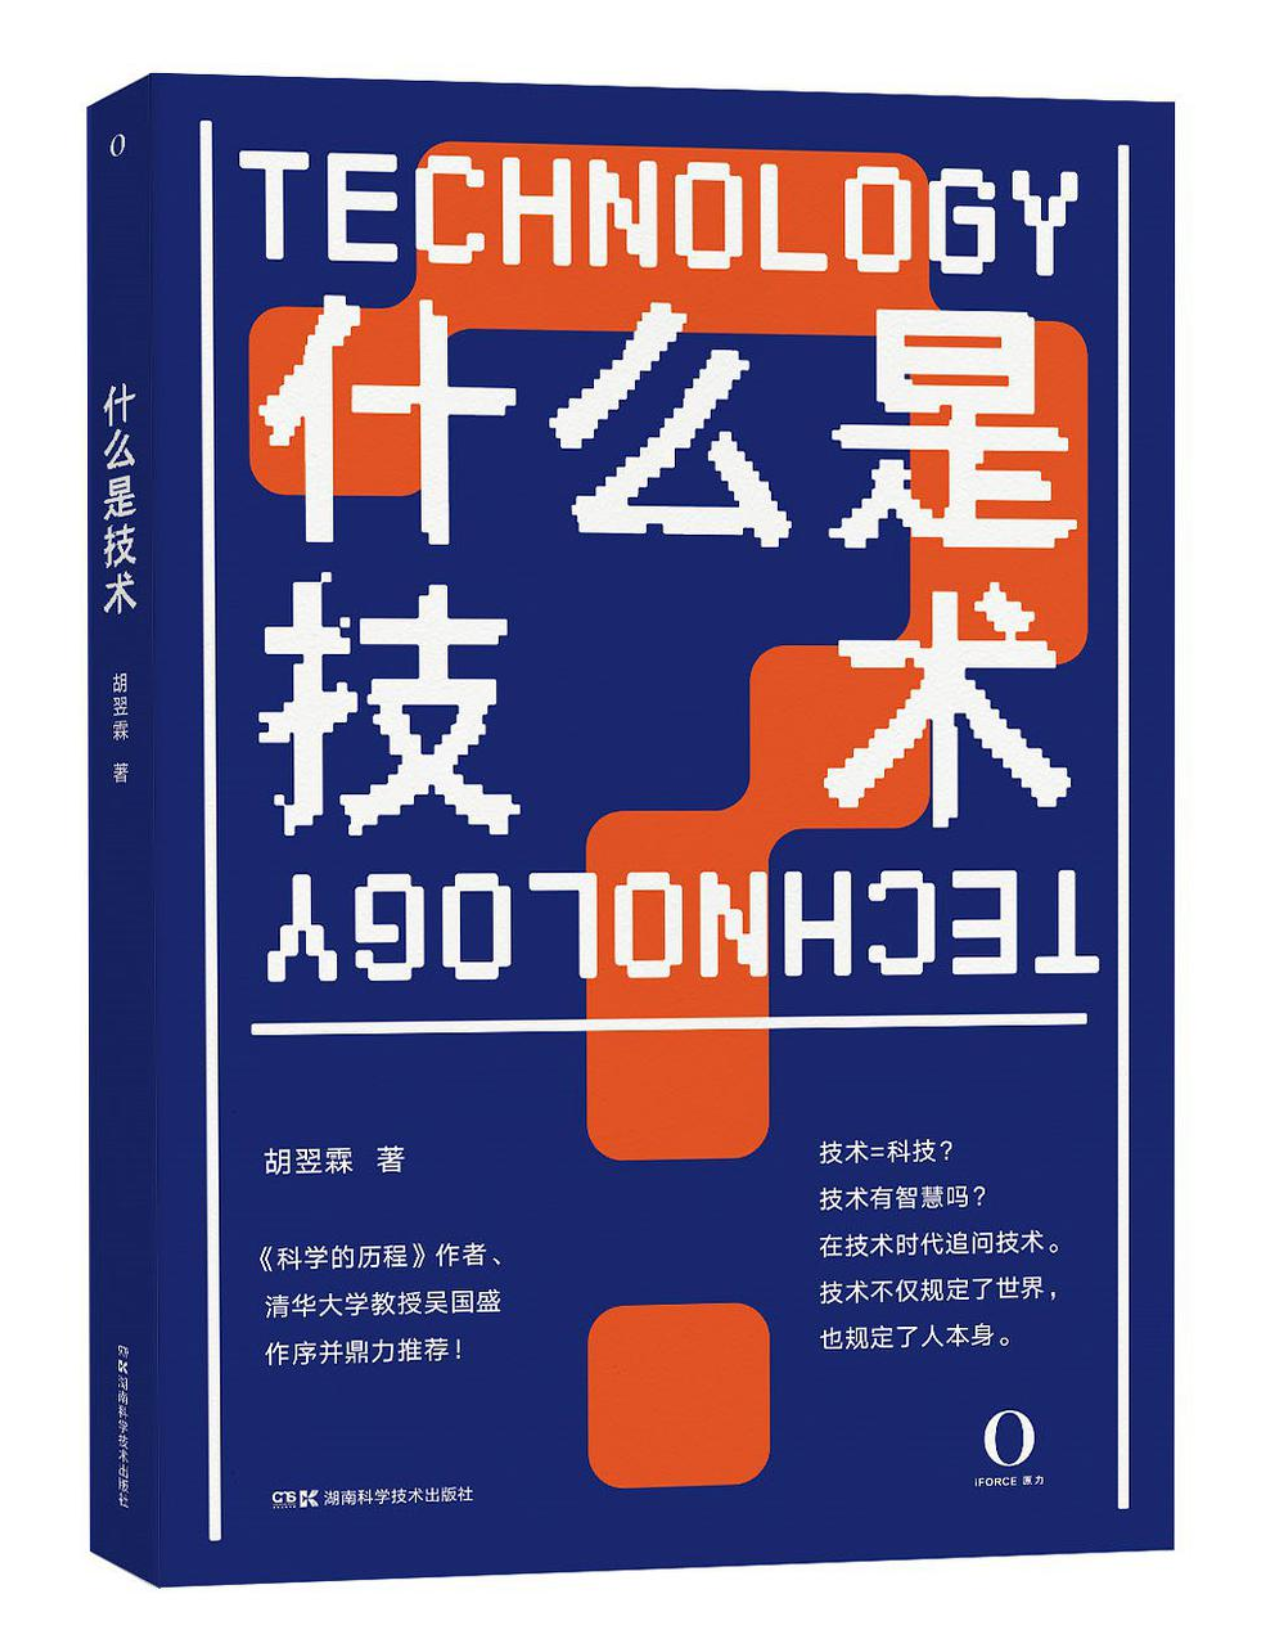 关于《什么是技术》接受中国科学报采访